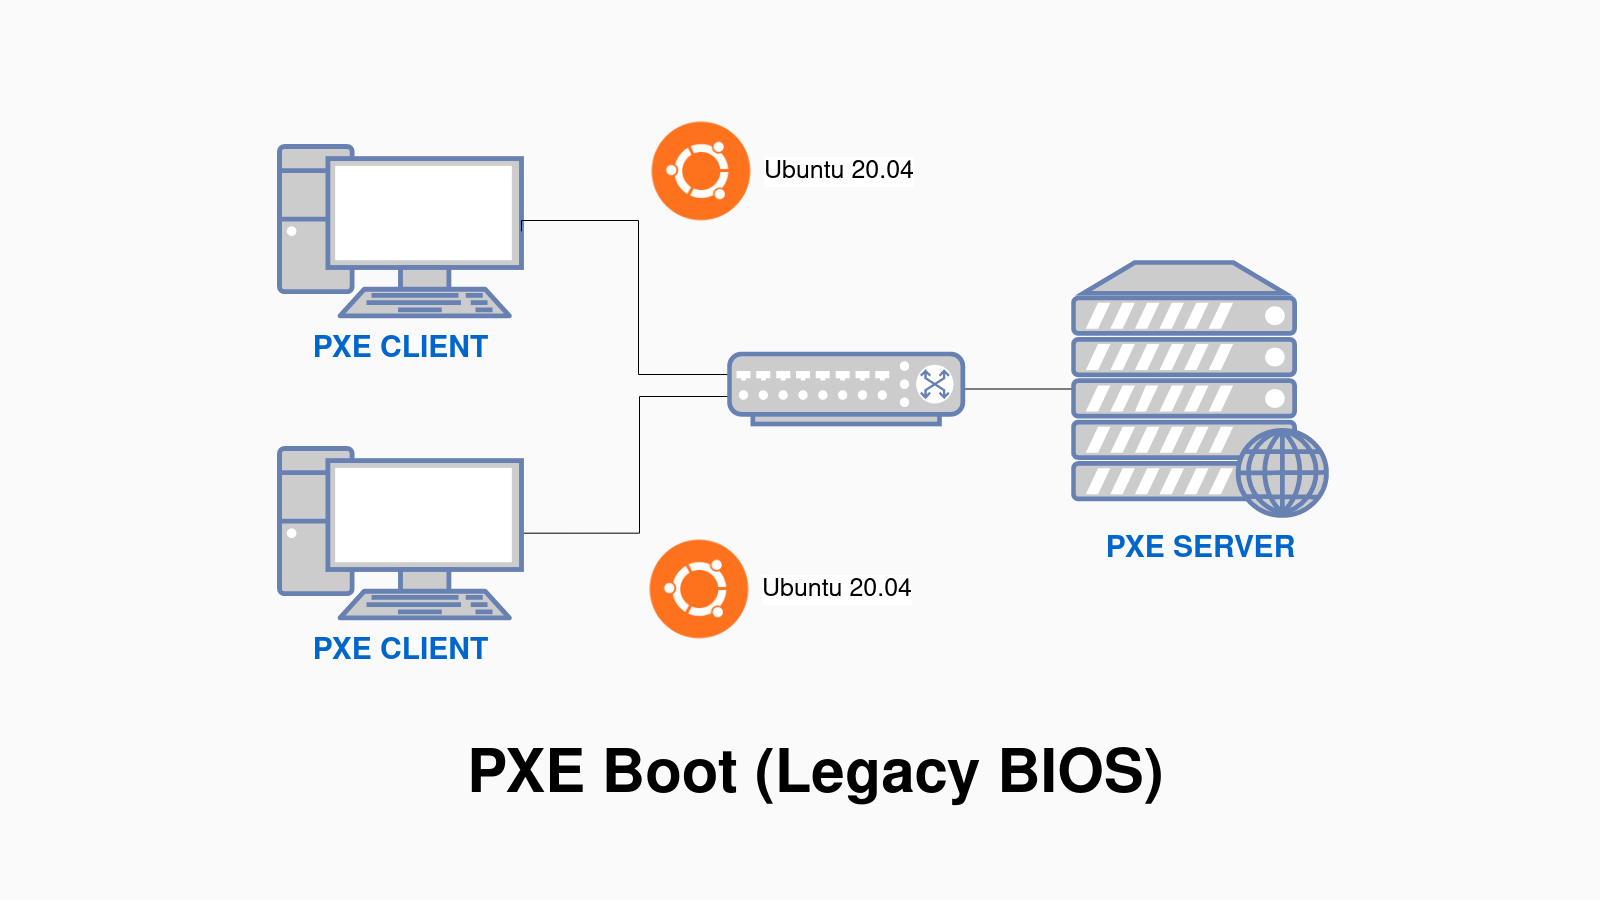 Thiết lập PXE Boot Server cài đặt Ubuntu 20.04 qua mạng cho Legacy BIOS